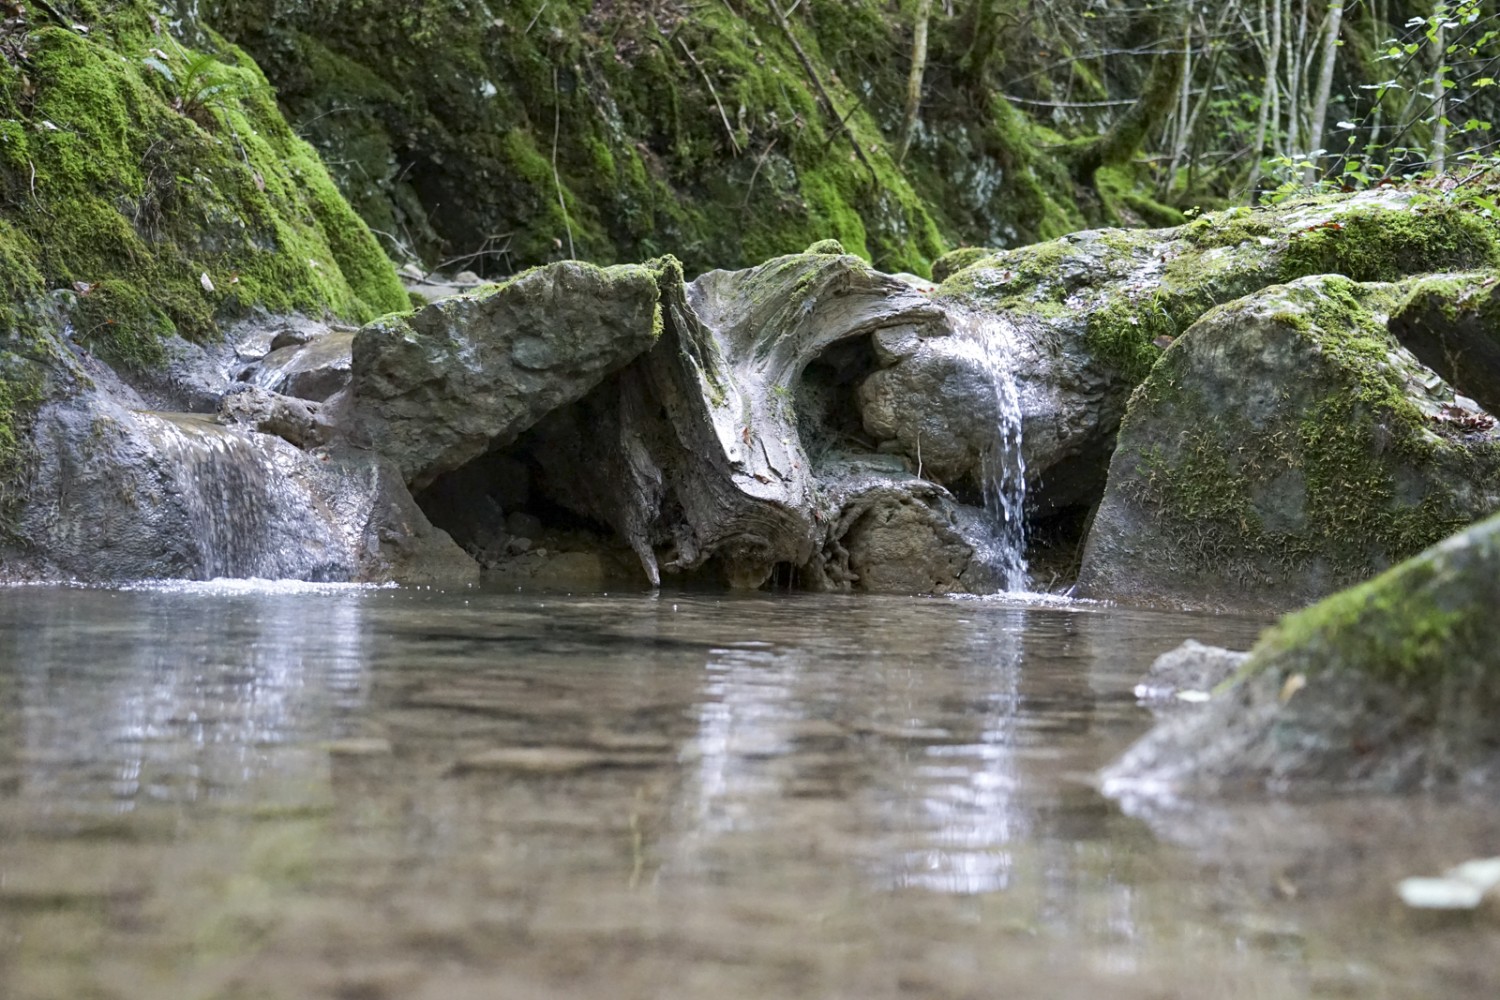 La charmante rivière La Chalière a sculpté les gorges de Perrefitte. Photo : Reto Wissmann